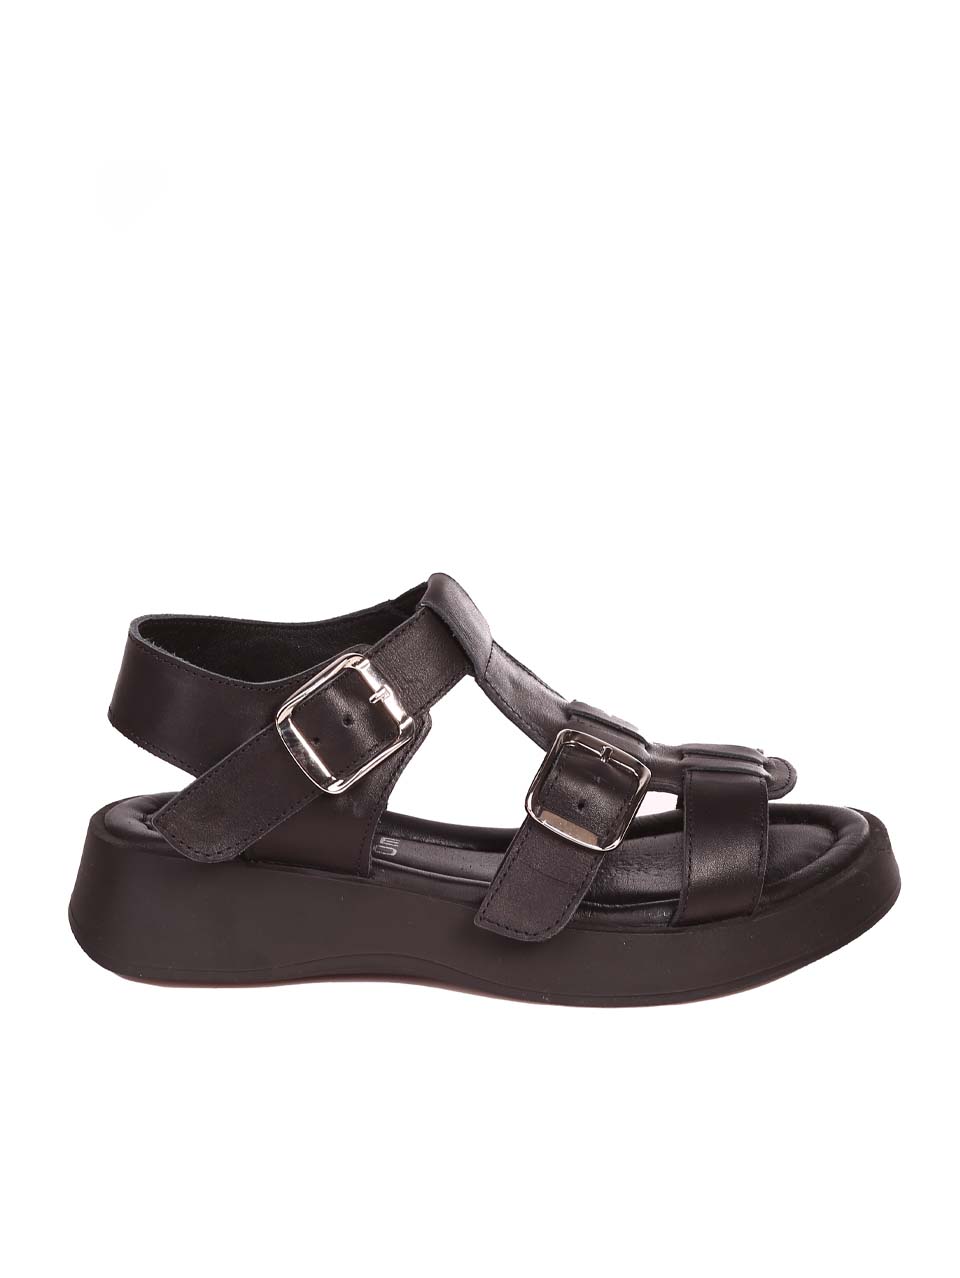 Дамски ежедневни сандали от естествена кожа 4AT-24388 black